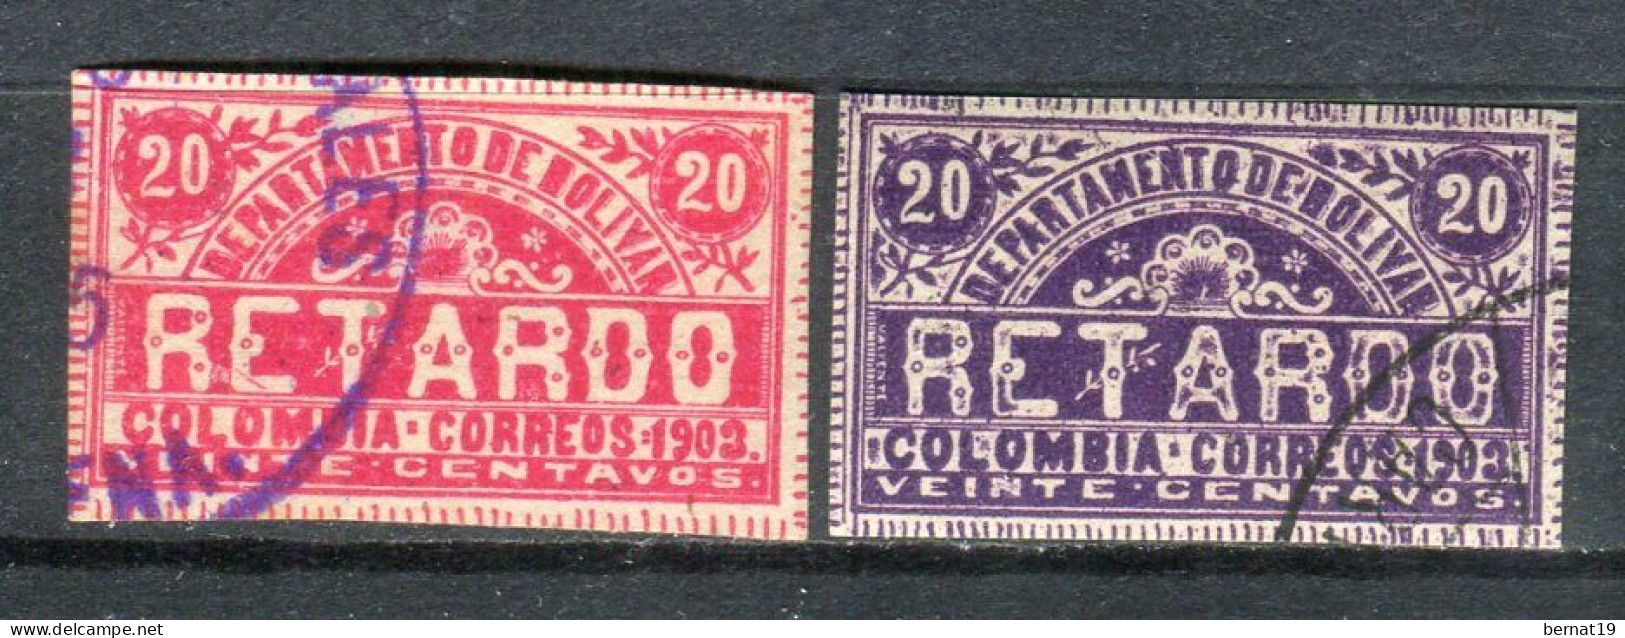 Colombia Departamento De Bolivar Retardo 1903. Yvert 1-2. - Kolumbien